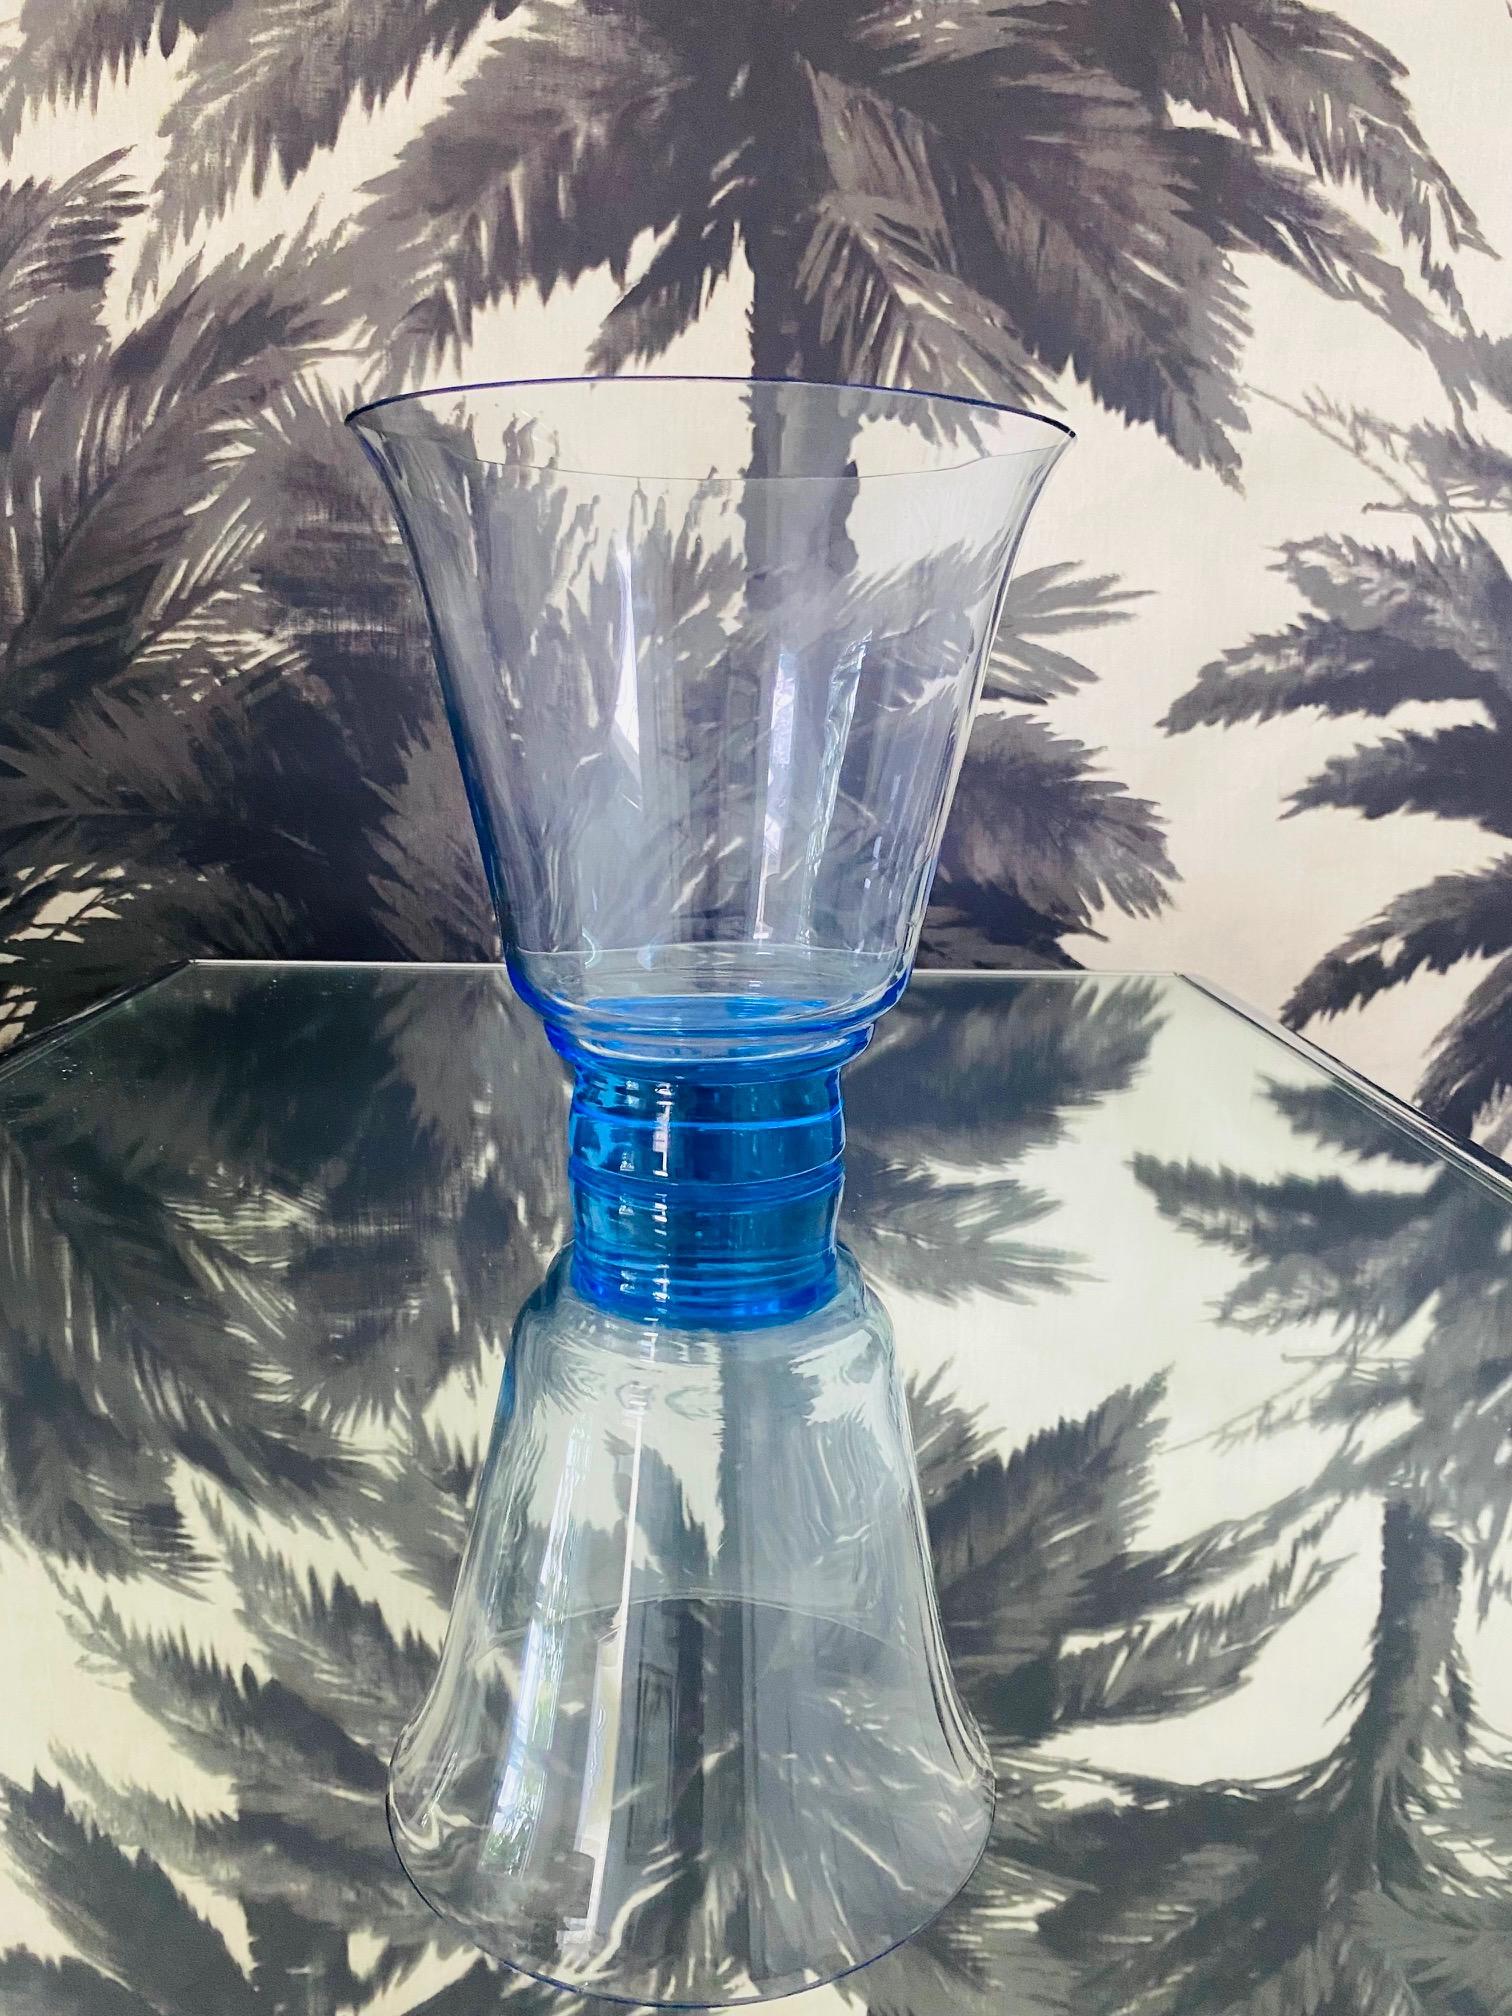 Vintage République tchèque vase en cristal soufflé à la bouche en bleu électrique translucide. Le vase a une forme effilée avec une base surélevée. Le verre bleu coloré change de teinte en fonction de la lumière ambiante et présente parfois des